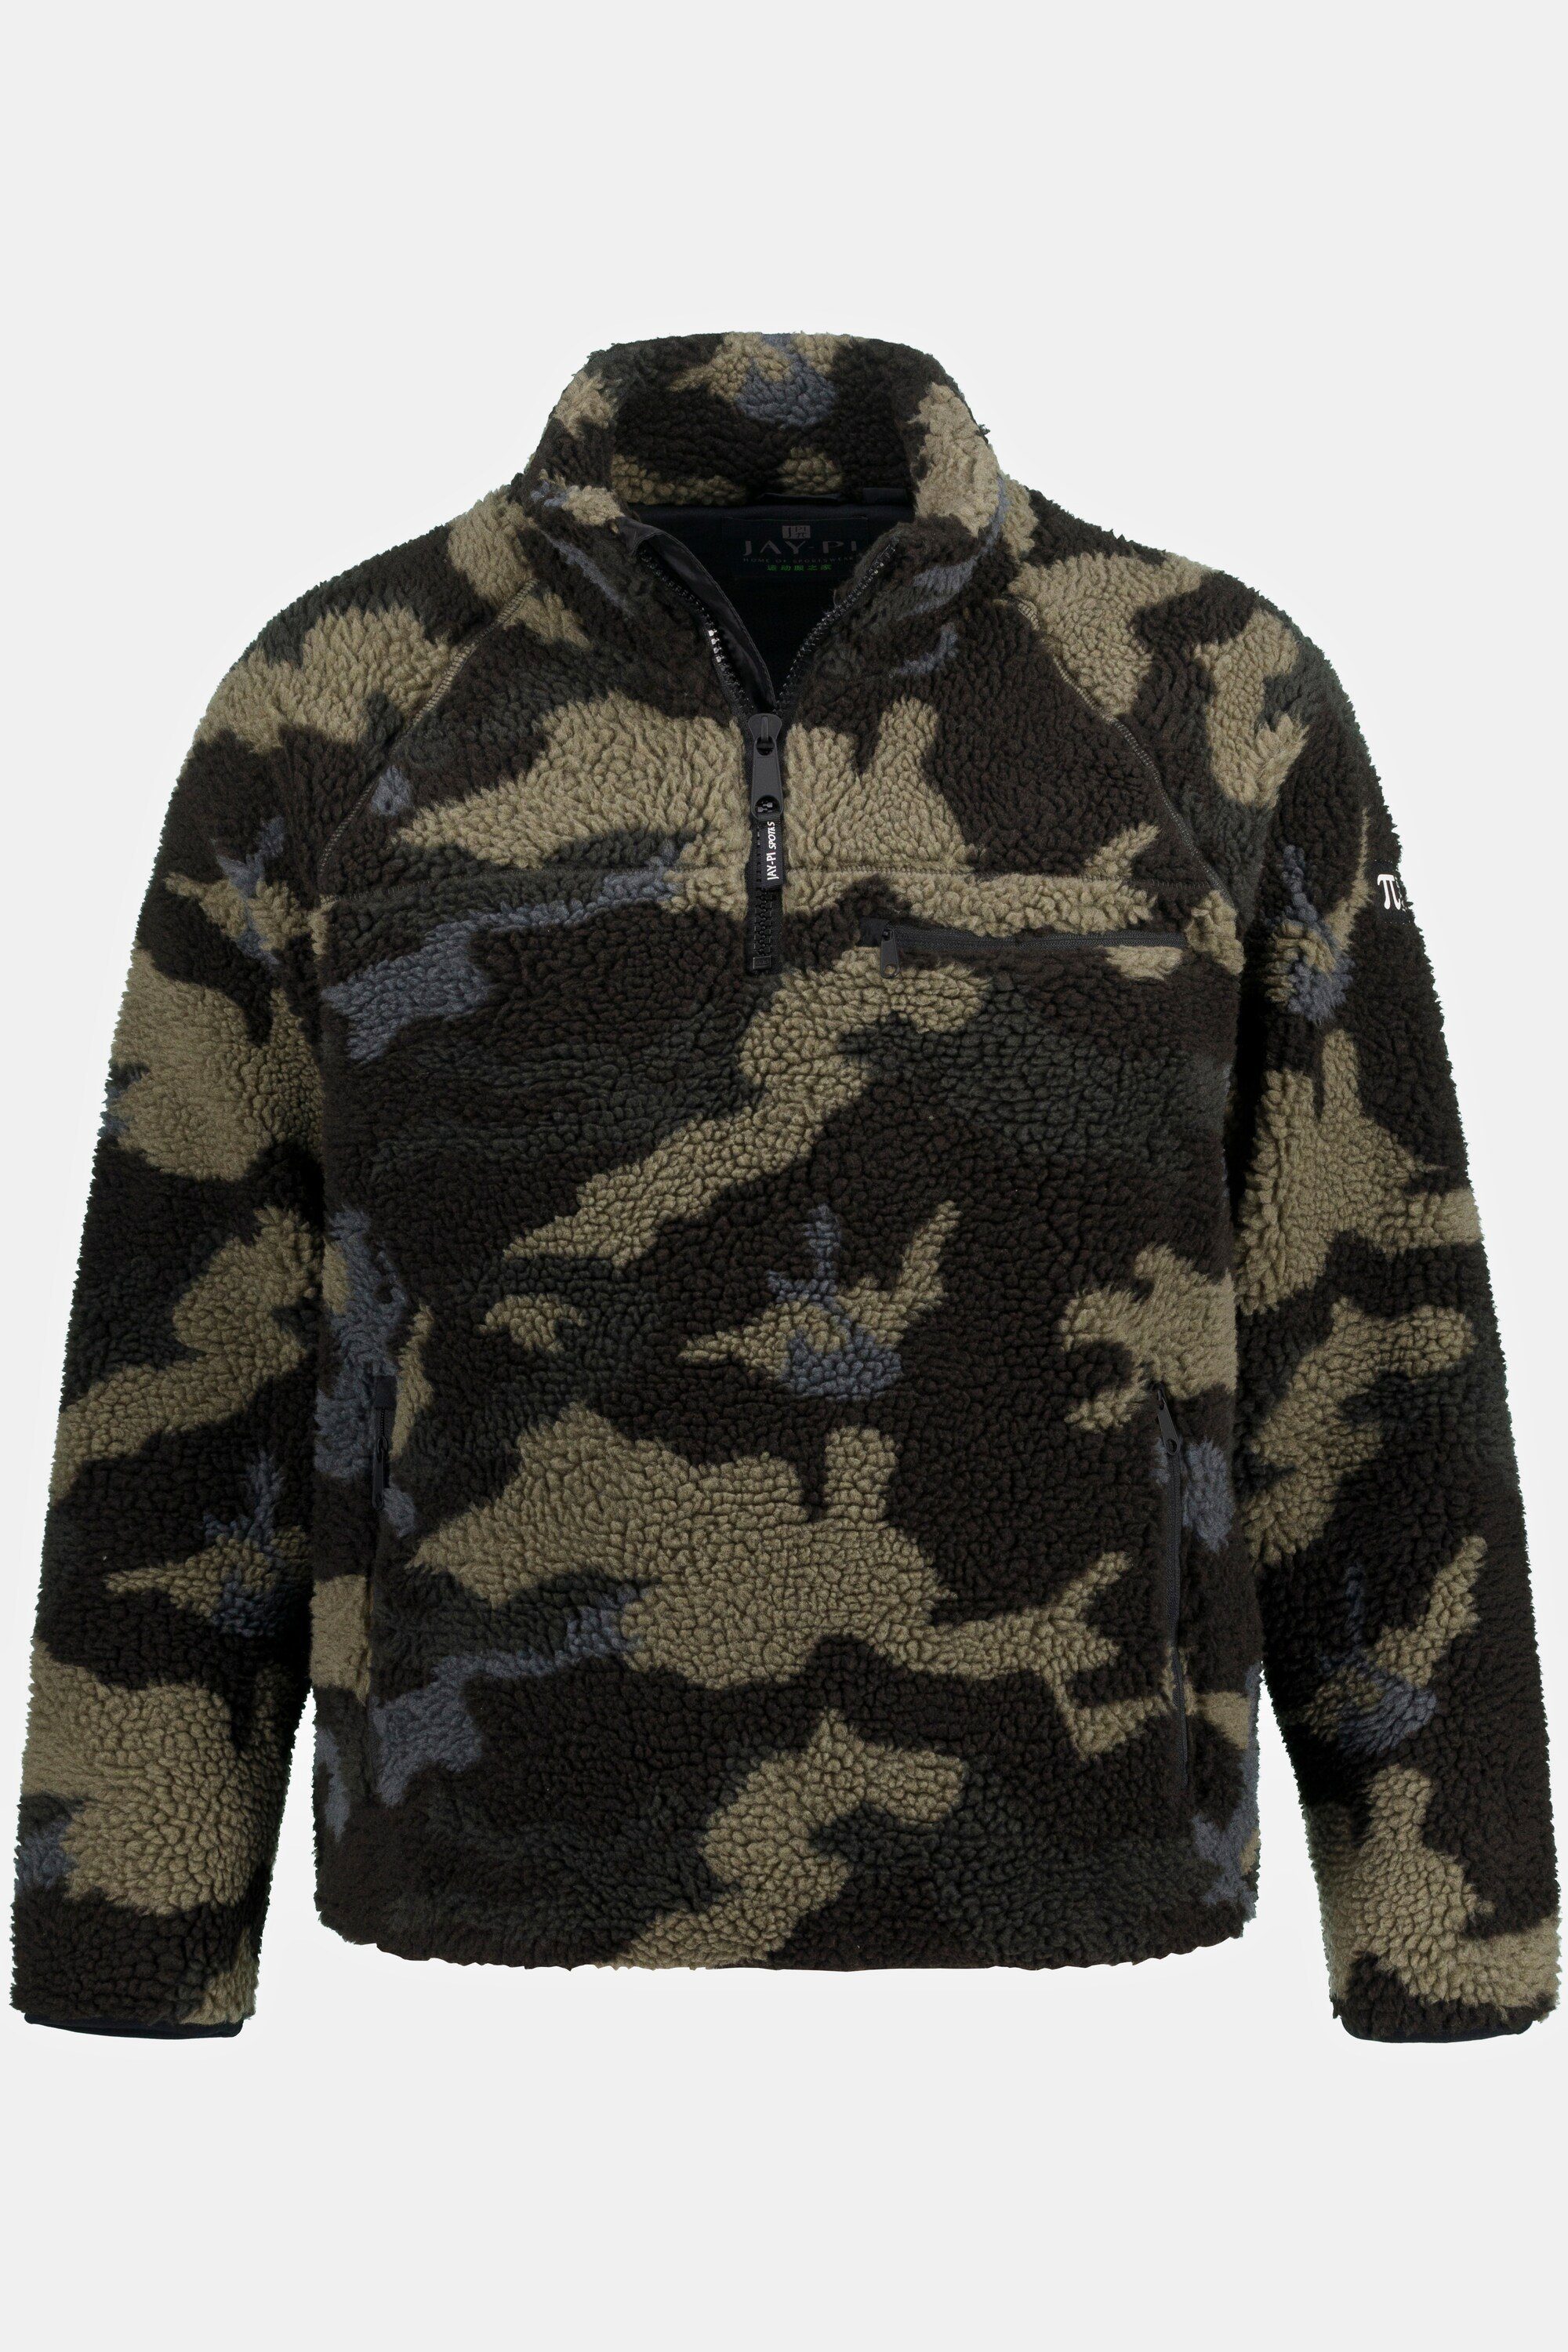 Camouflage Teddy-Skijacke Skiwear Fleecejacke Outdoor JP1880